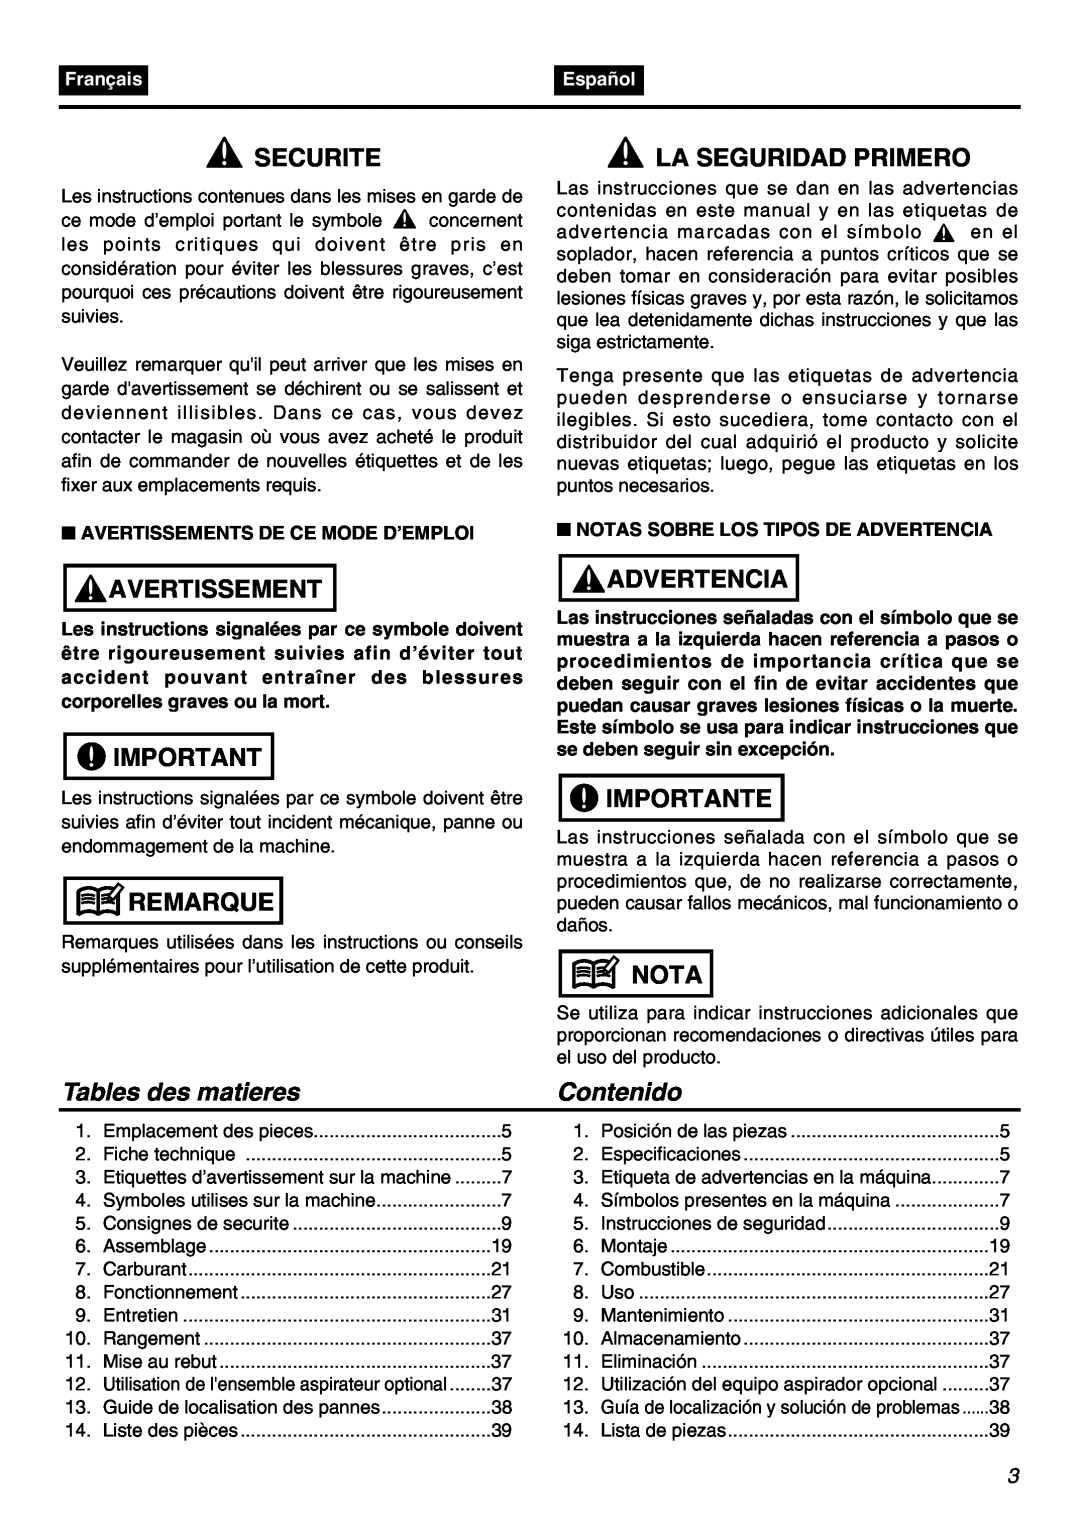 Zenoah HBZ2601-CA manual Securite, Avertissement, Remarque, La Seguridad Primero, Advertencia, Importante, Nota, Contenido 